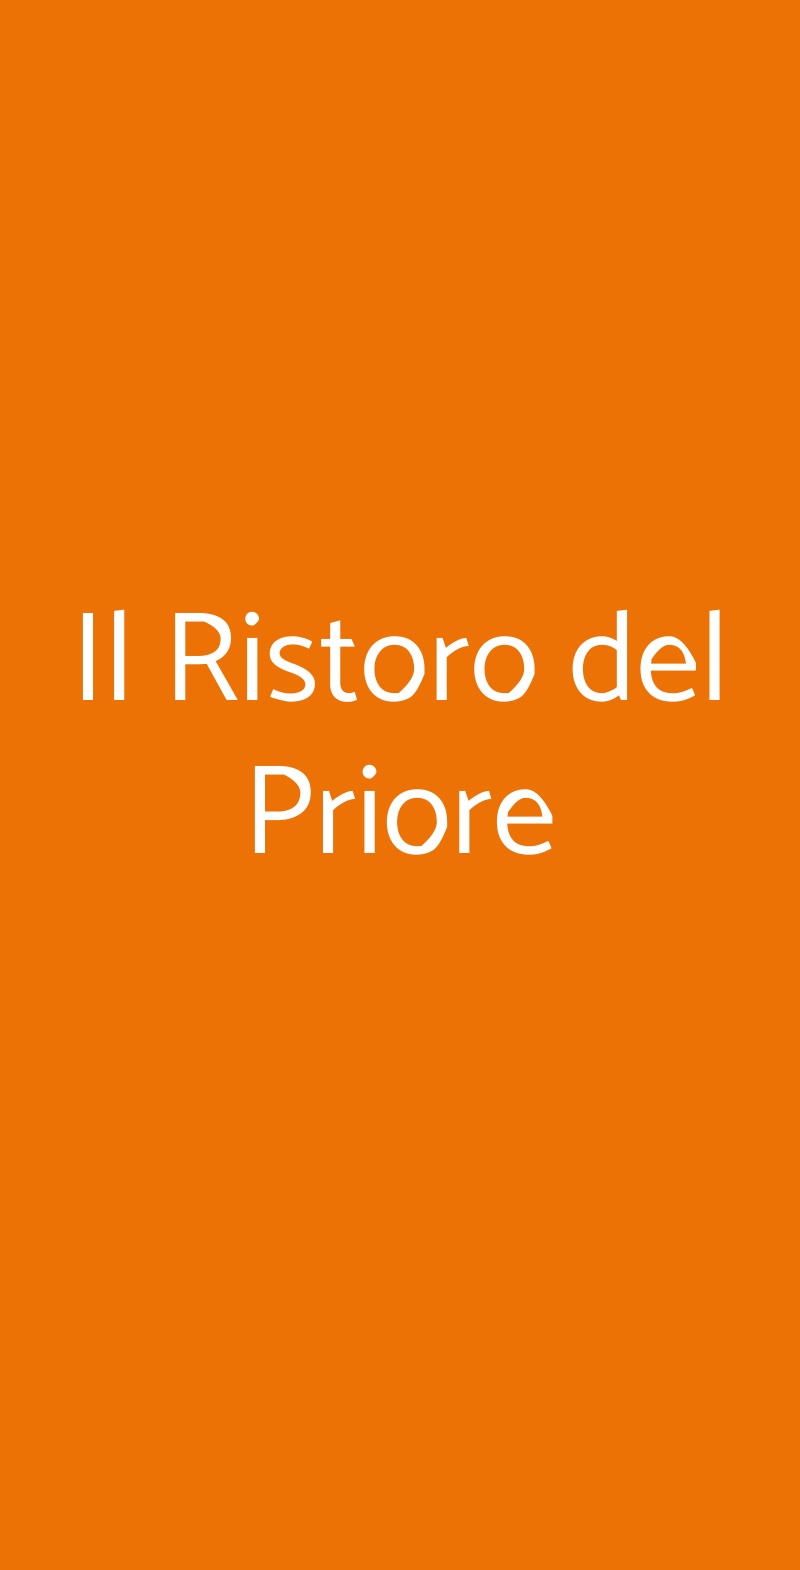 Il Ristoro del Priore Torino menù 1 pagina